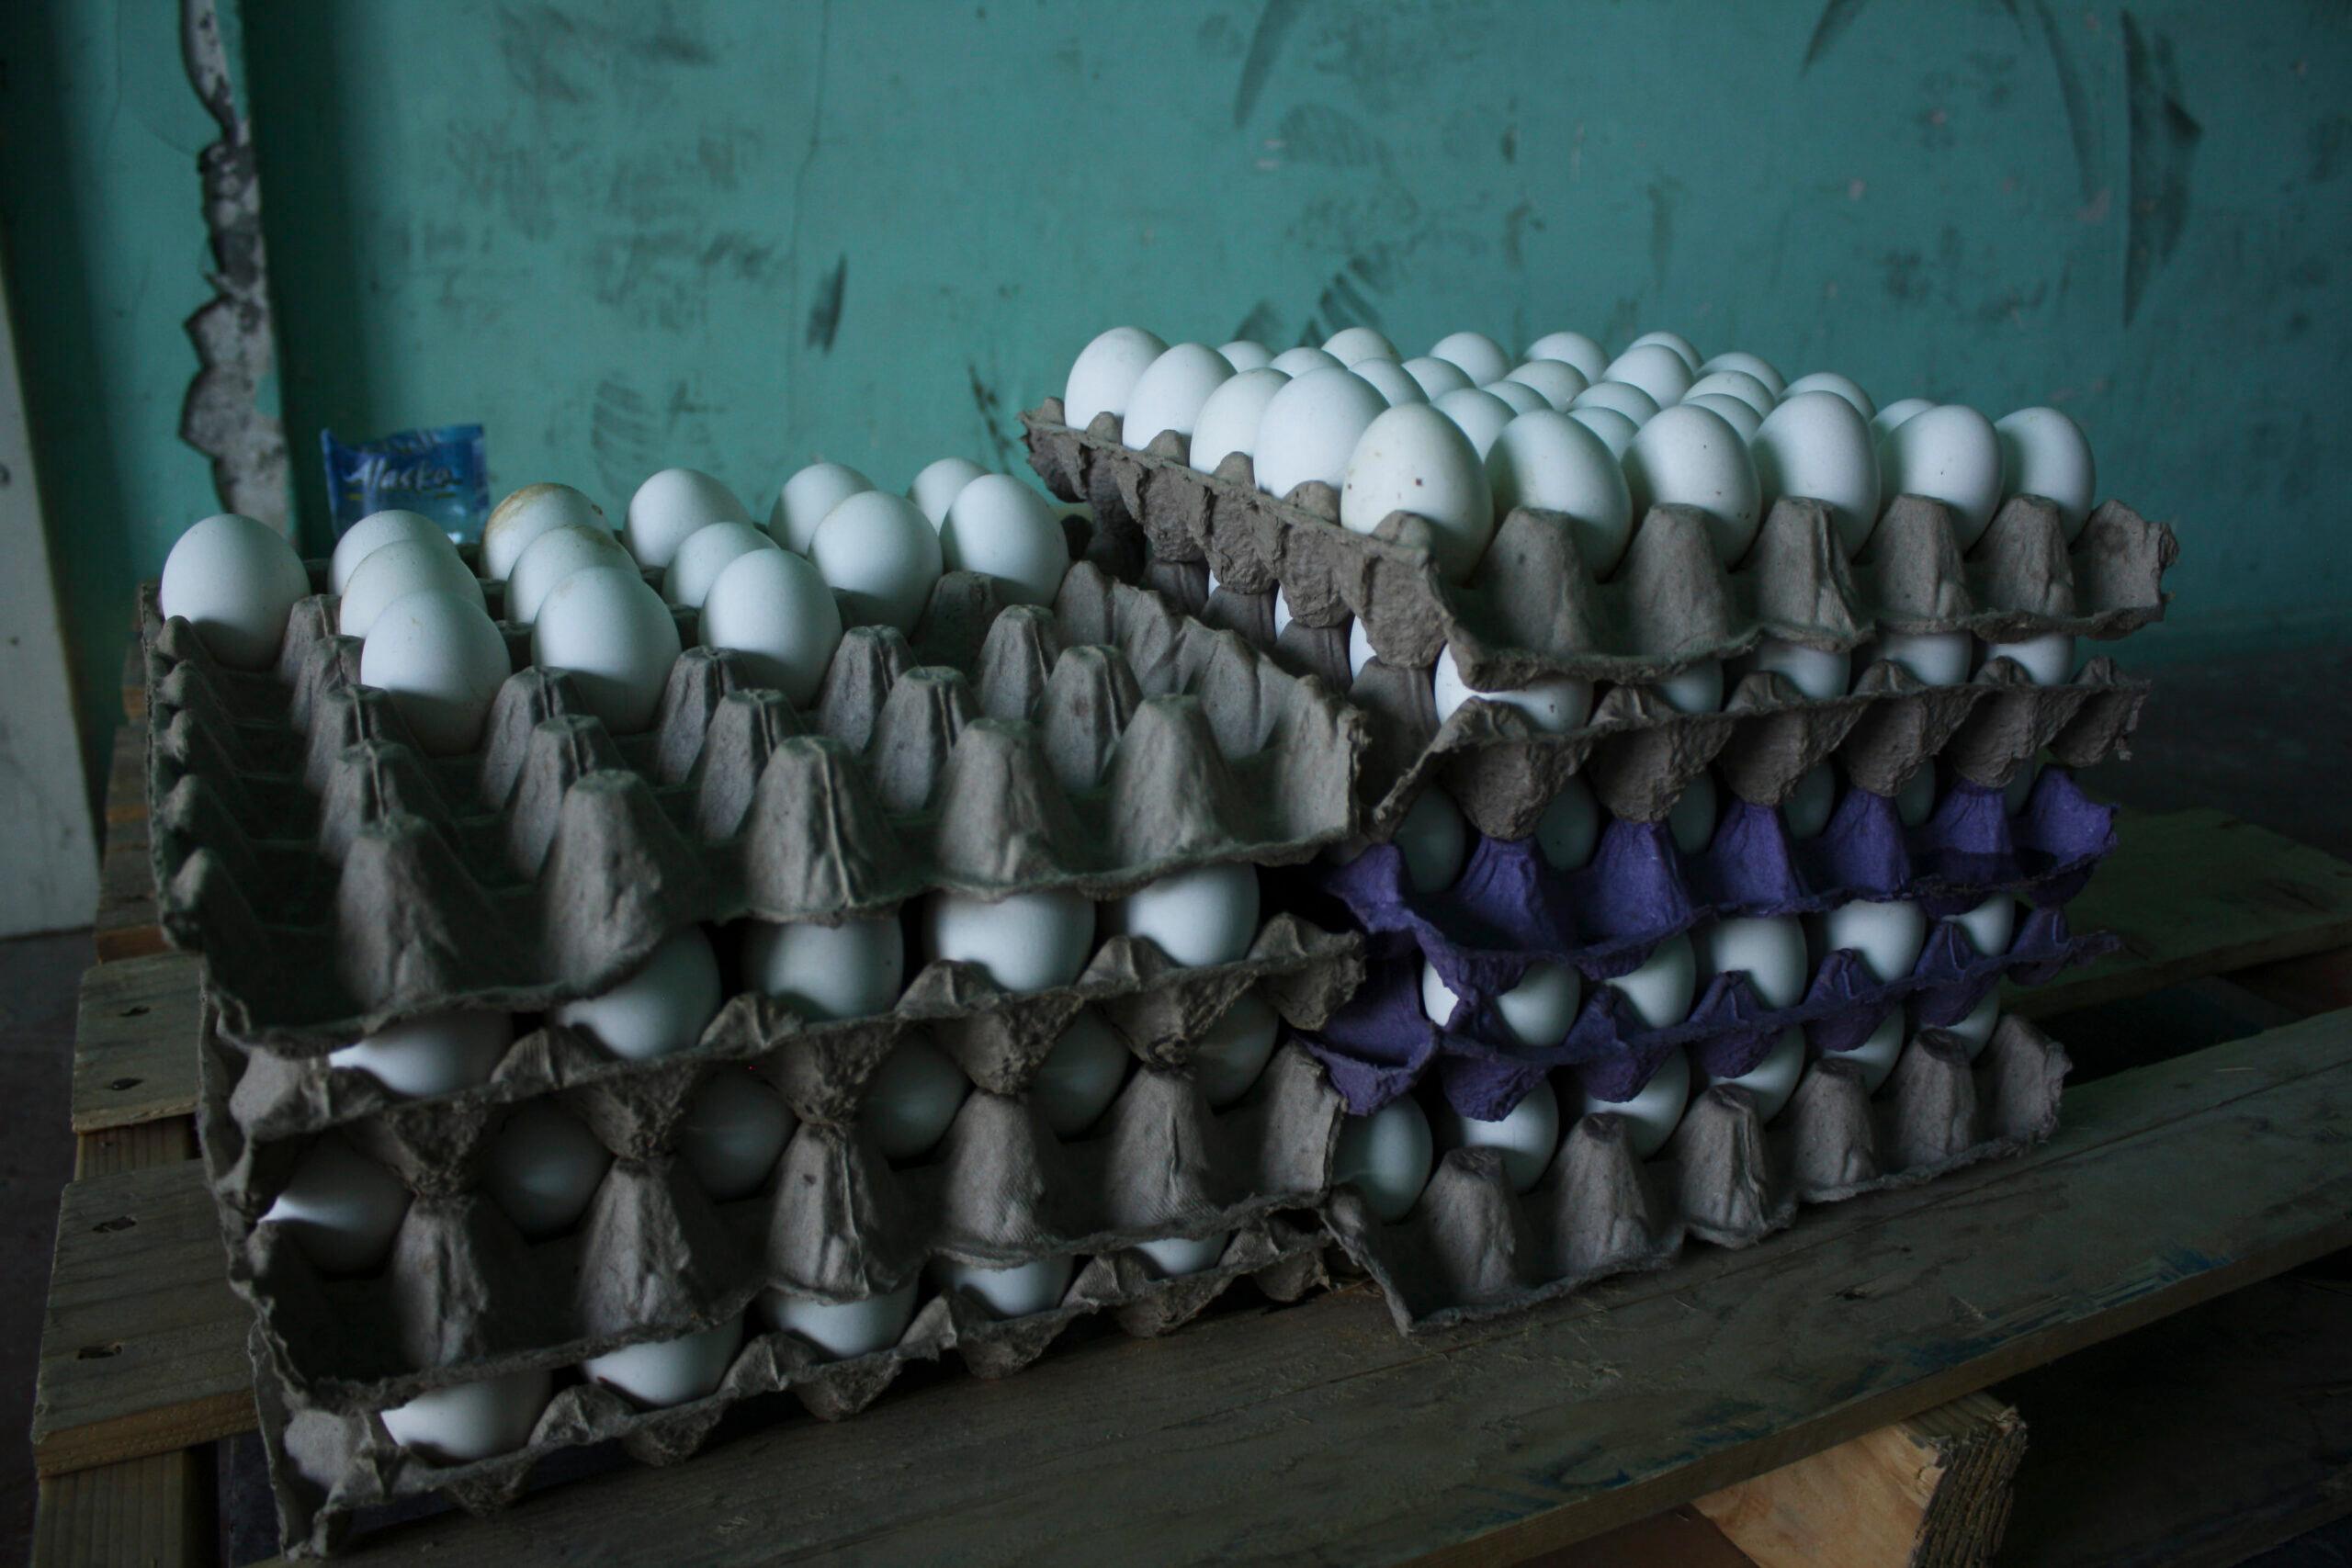 Oferta de huevo será normal en noviembre, del precio, aún no se sabe: Sagarpa